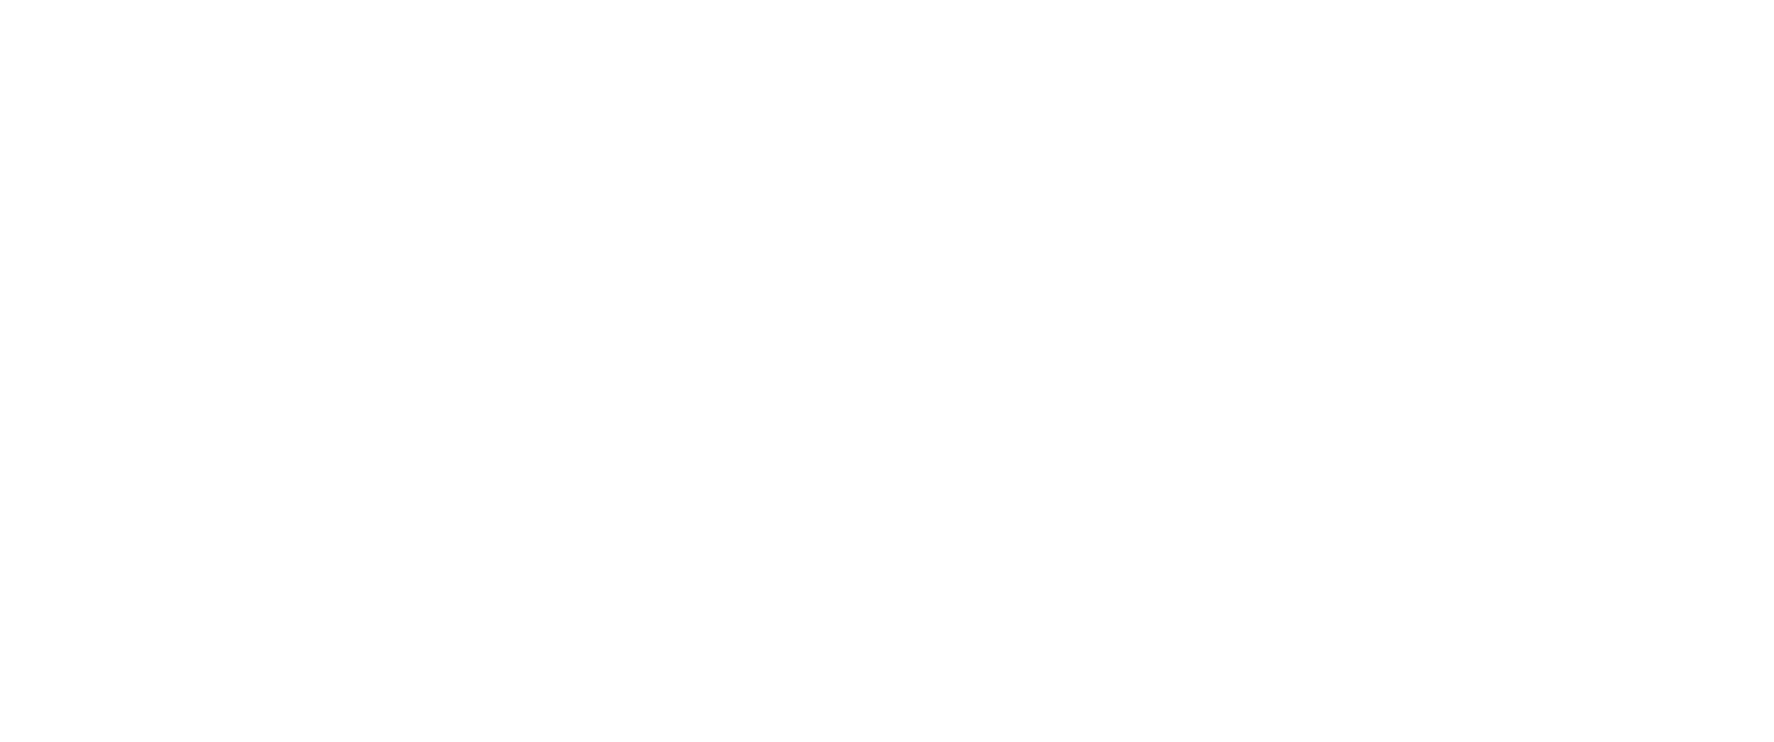 LanguageLoop logo